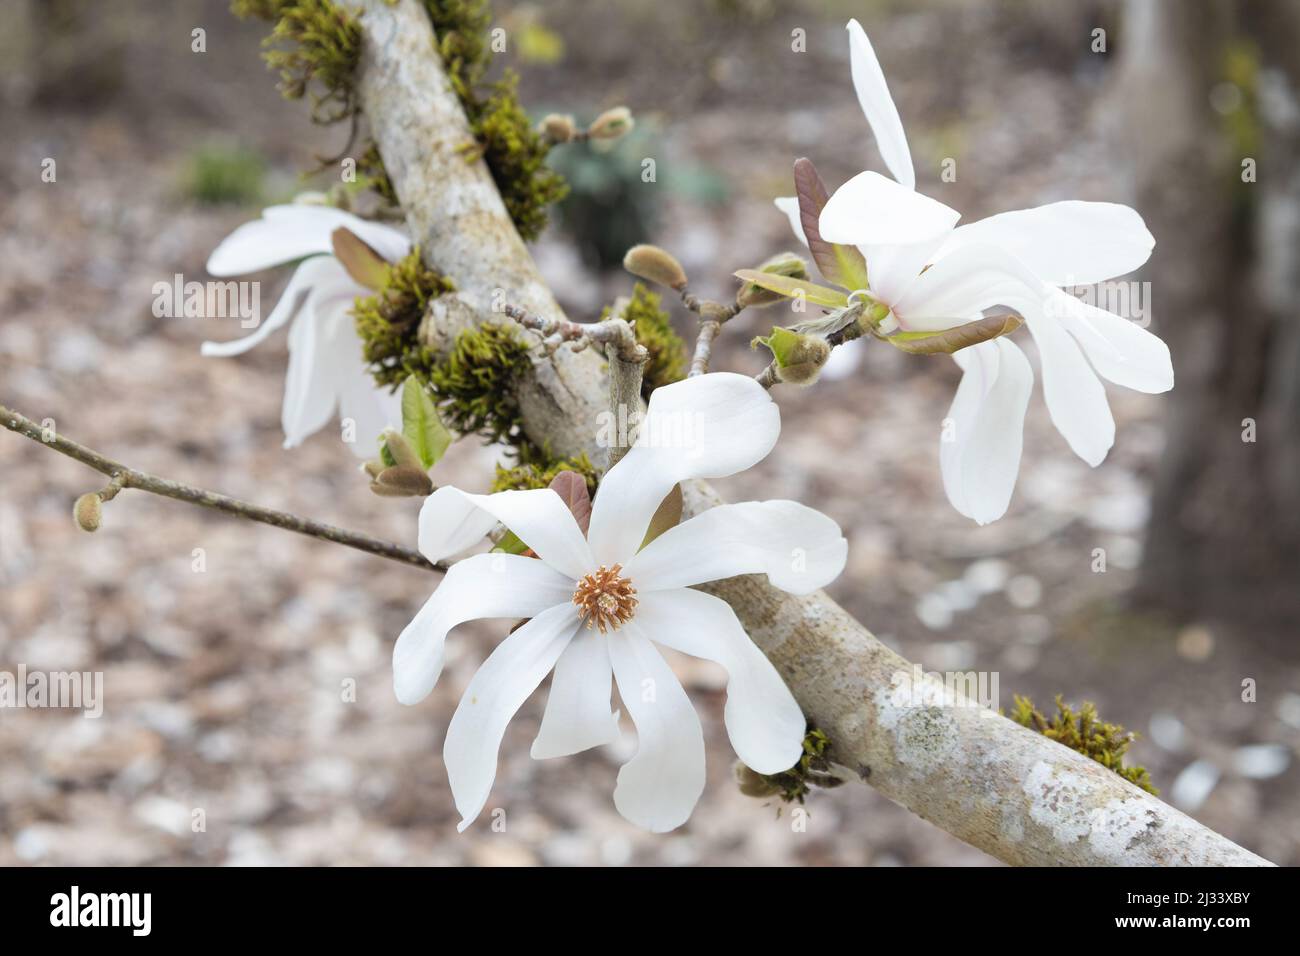 Magnolia x loebneri 'Merrill' - Dr. Merrill magnolia tree with blossoms. Stock Photo